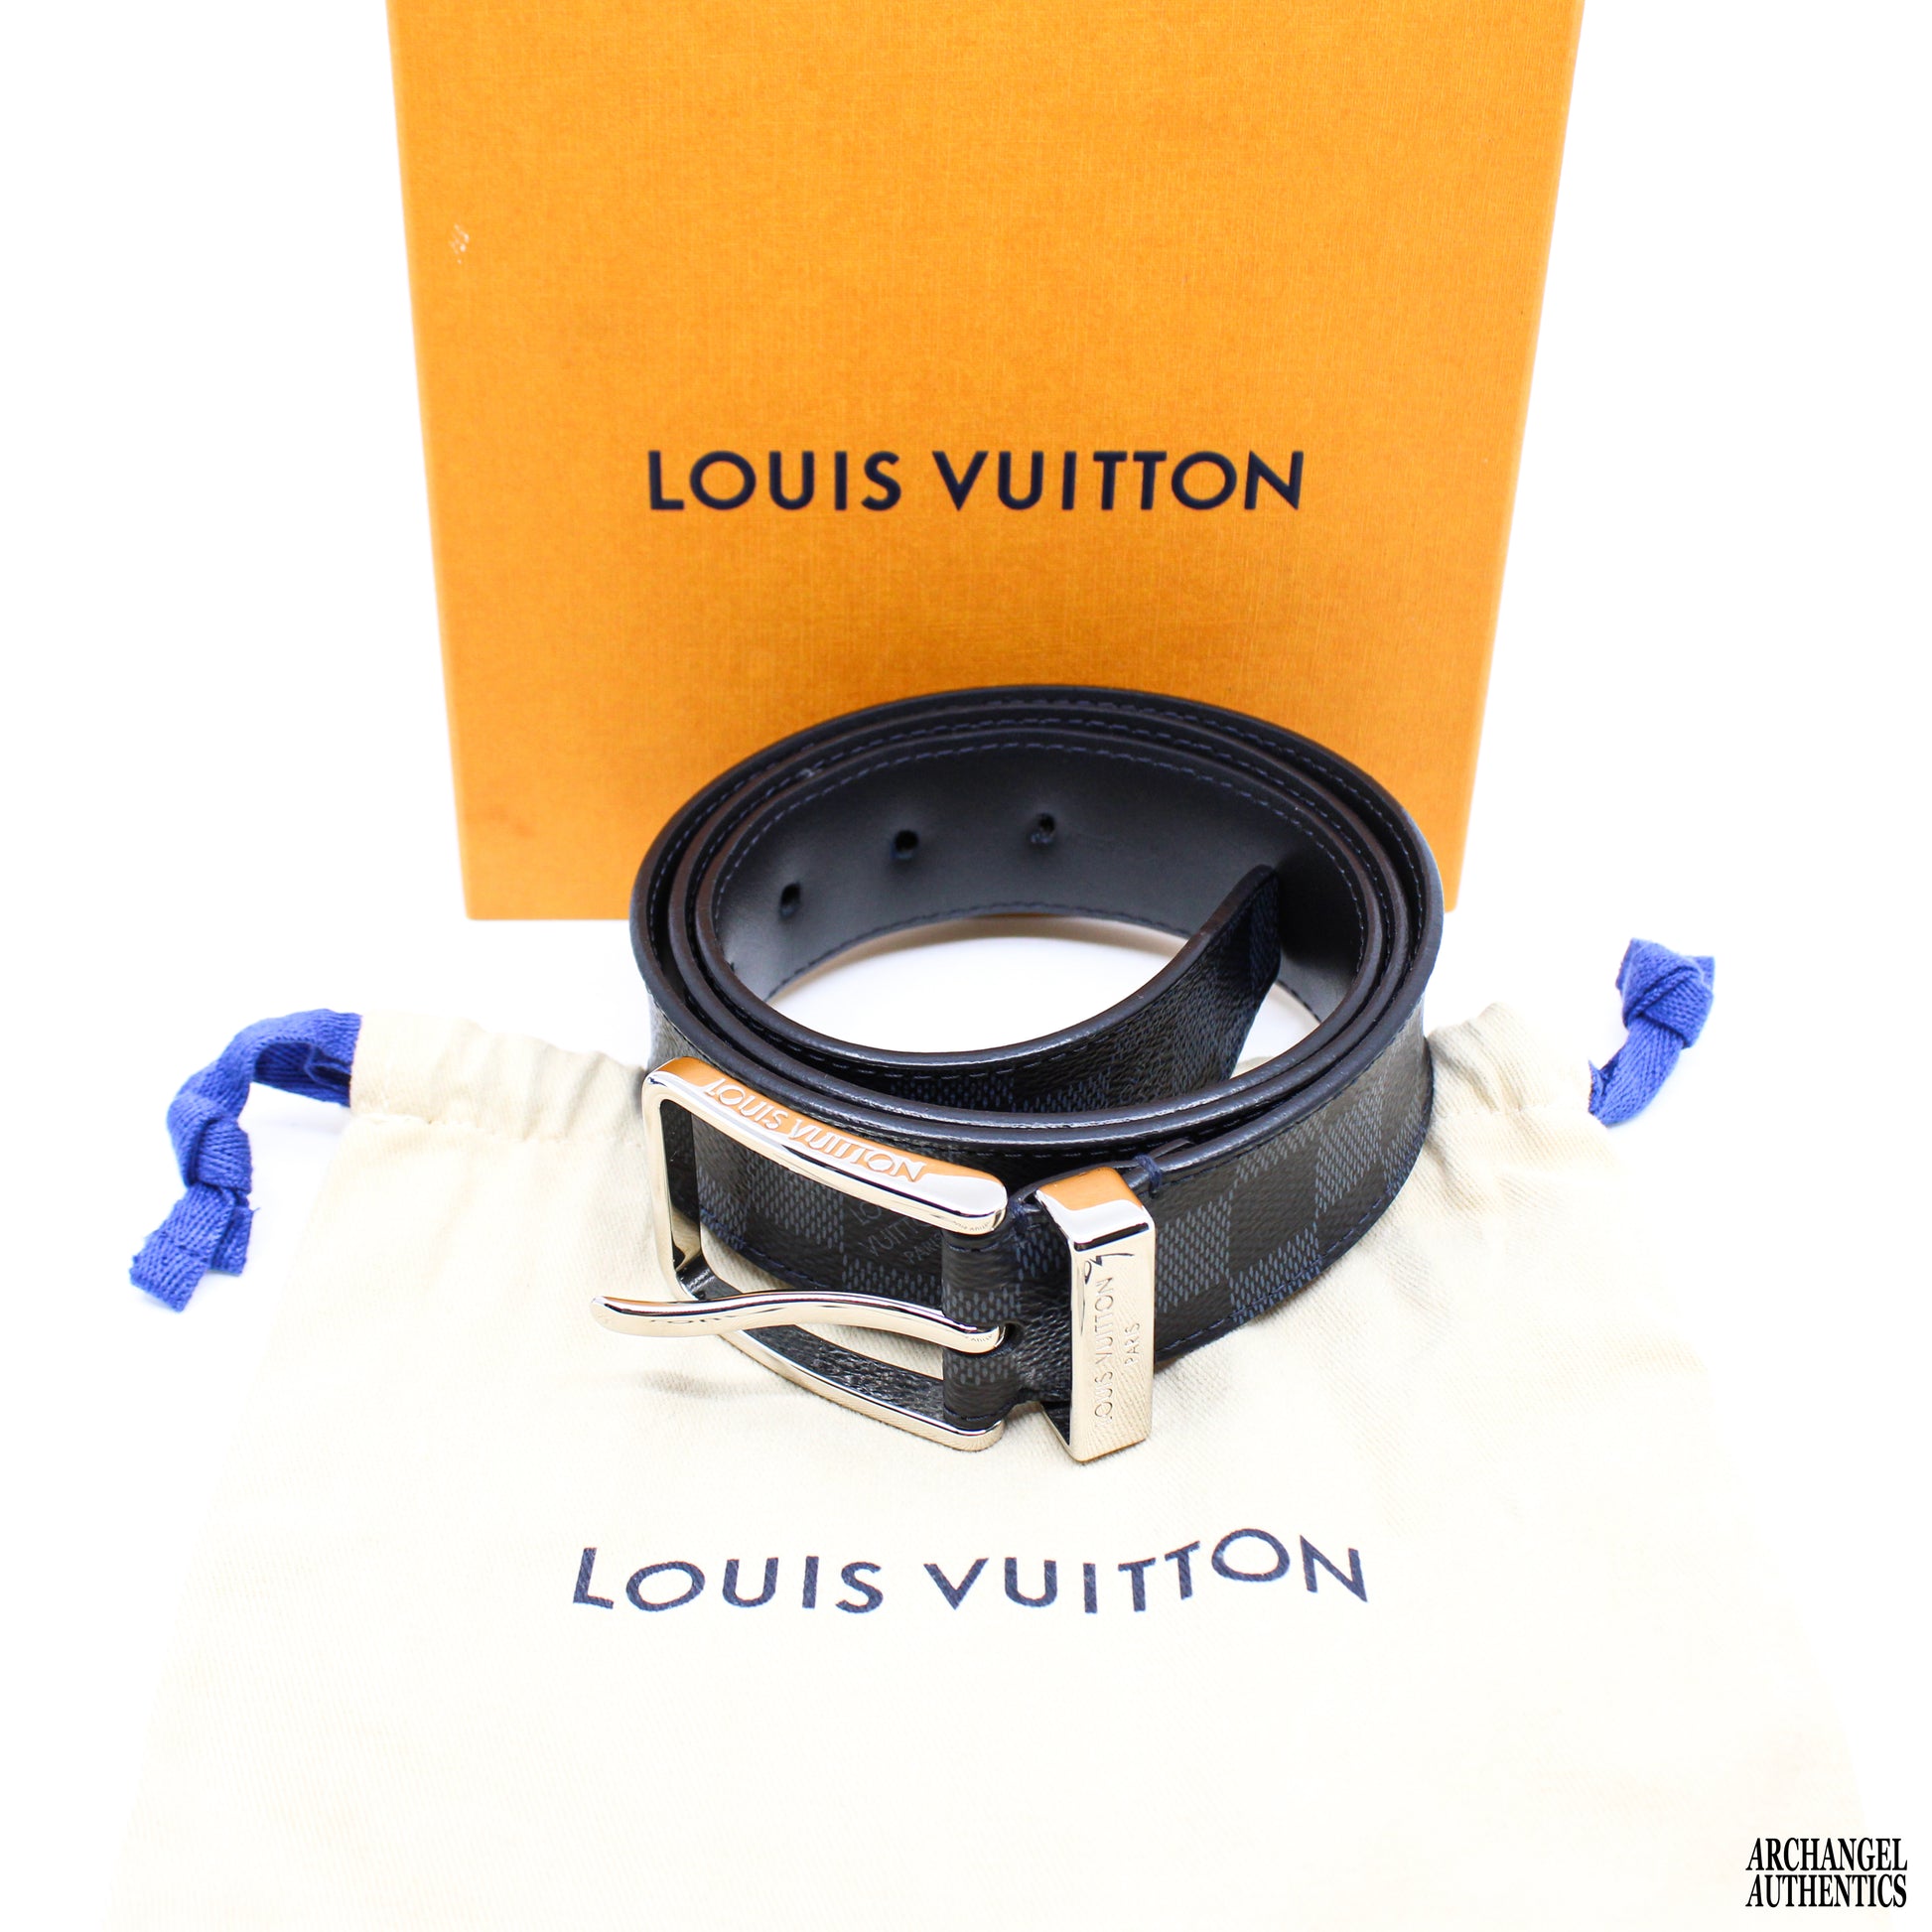 Unisex Pre-Owned Authenticated Louis Vuitton Damier Cobalt